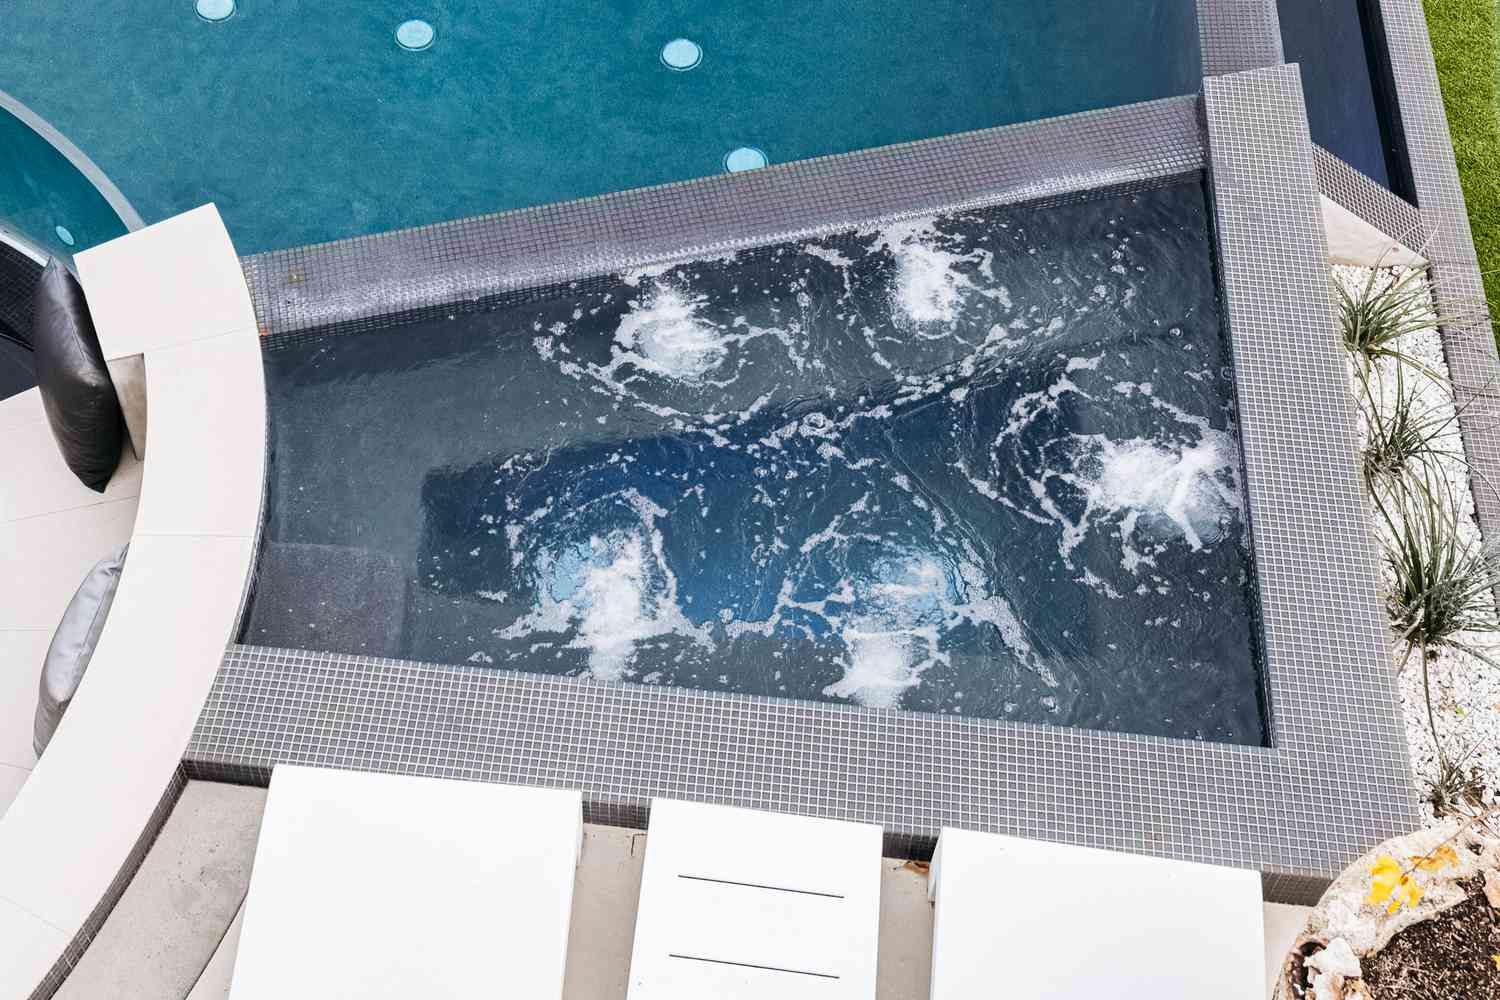 Banheira de hidromassagem moderna ao lado de cadeiras reclináveis brancas e piscina